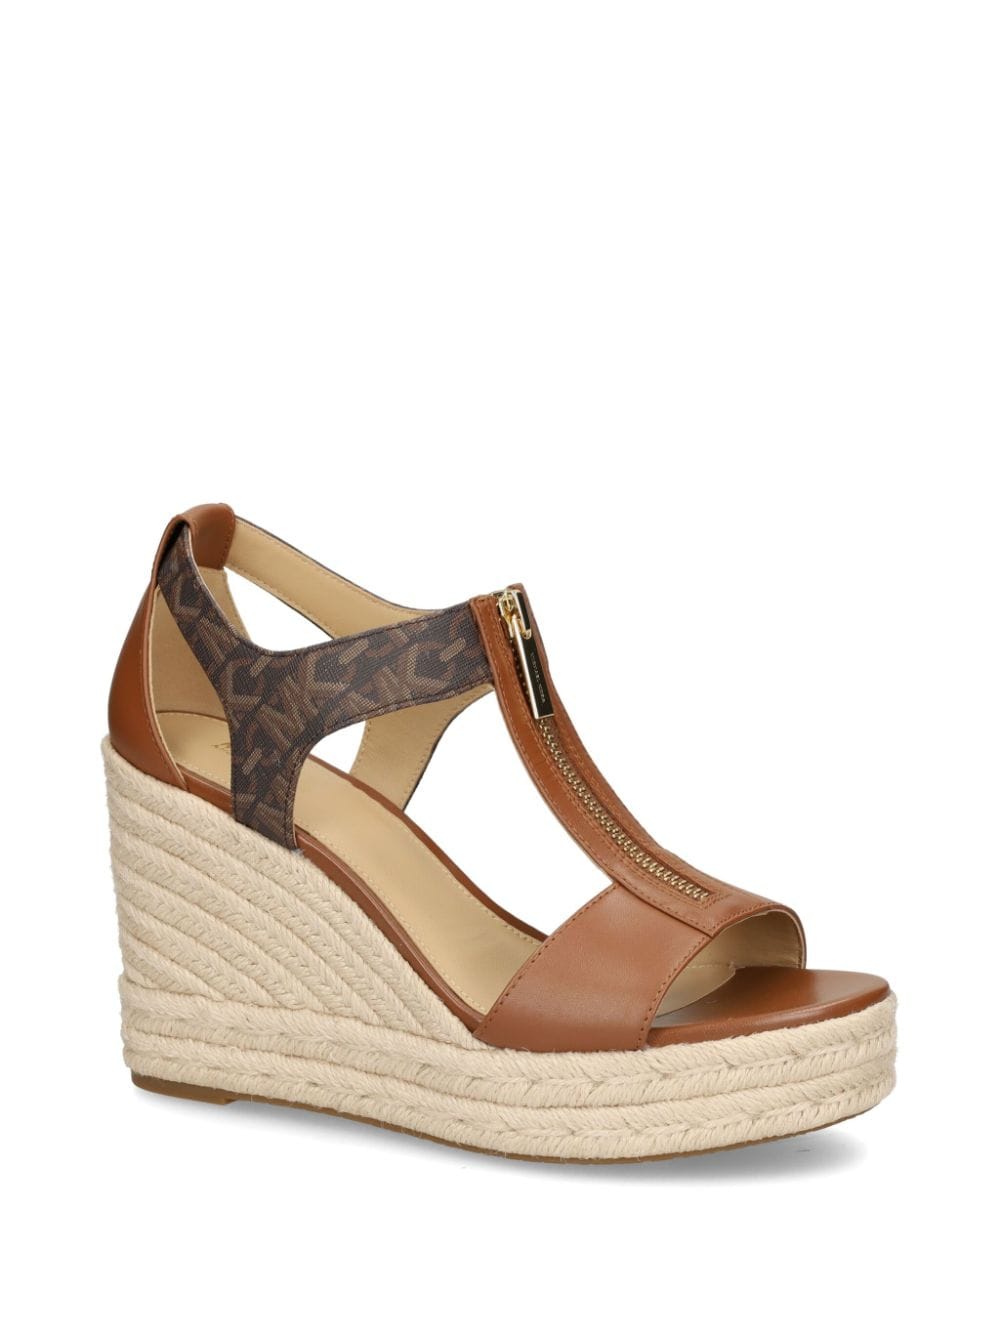 Shop Michael Kors Berkley Wedge Sandals In Brown